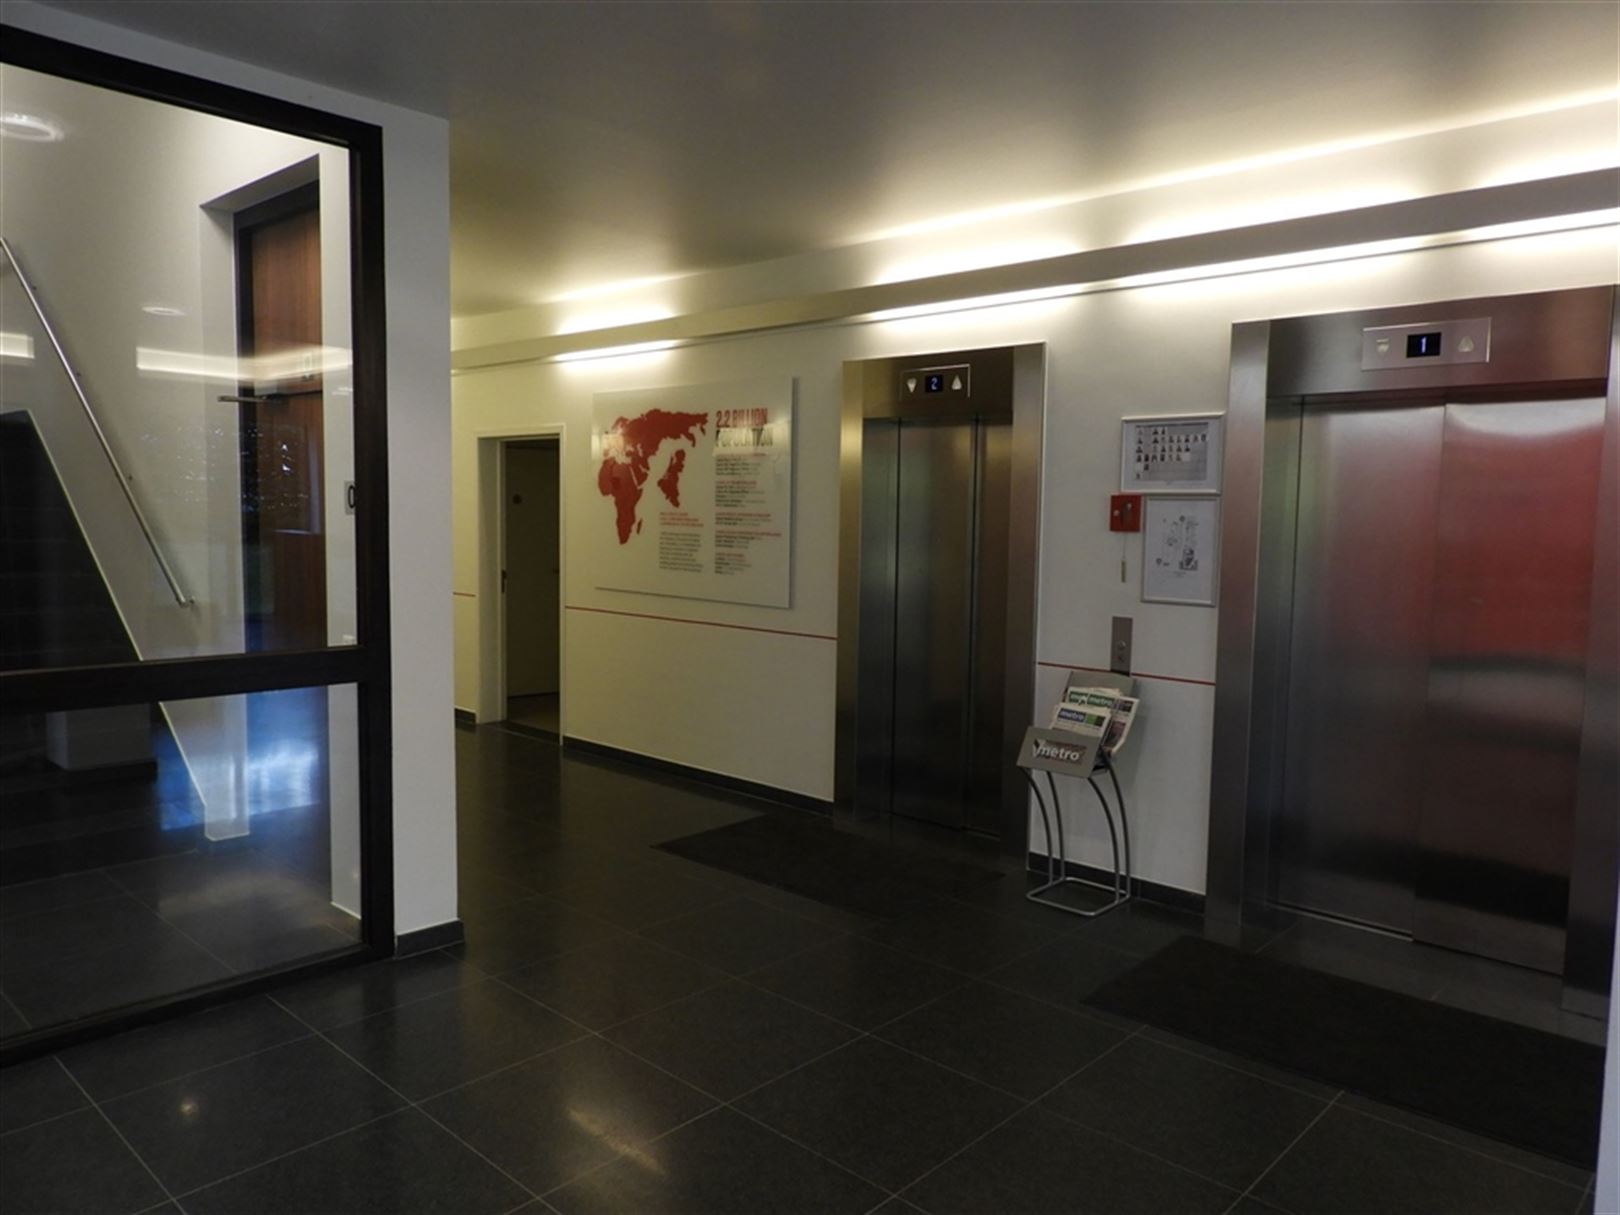 BERKENLAAN 3: kantoorgebouw strategisch in Diegem gelegen met beschikbare oppervlaktes vanaf ong. 600m² tot ong. 1.300m² foto 4